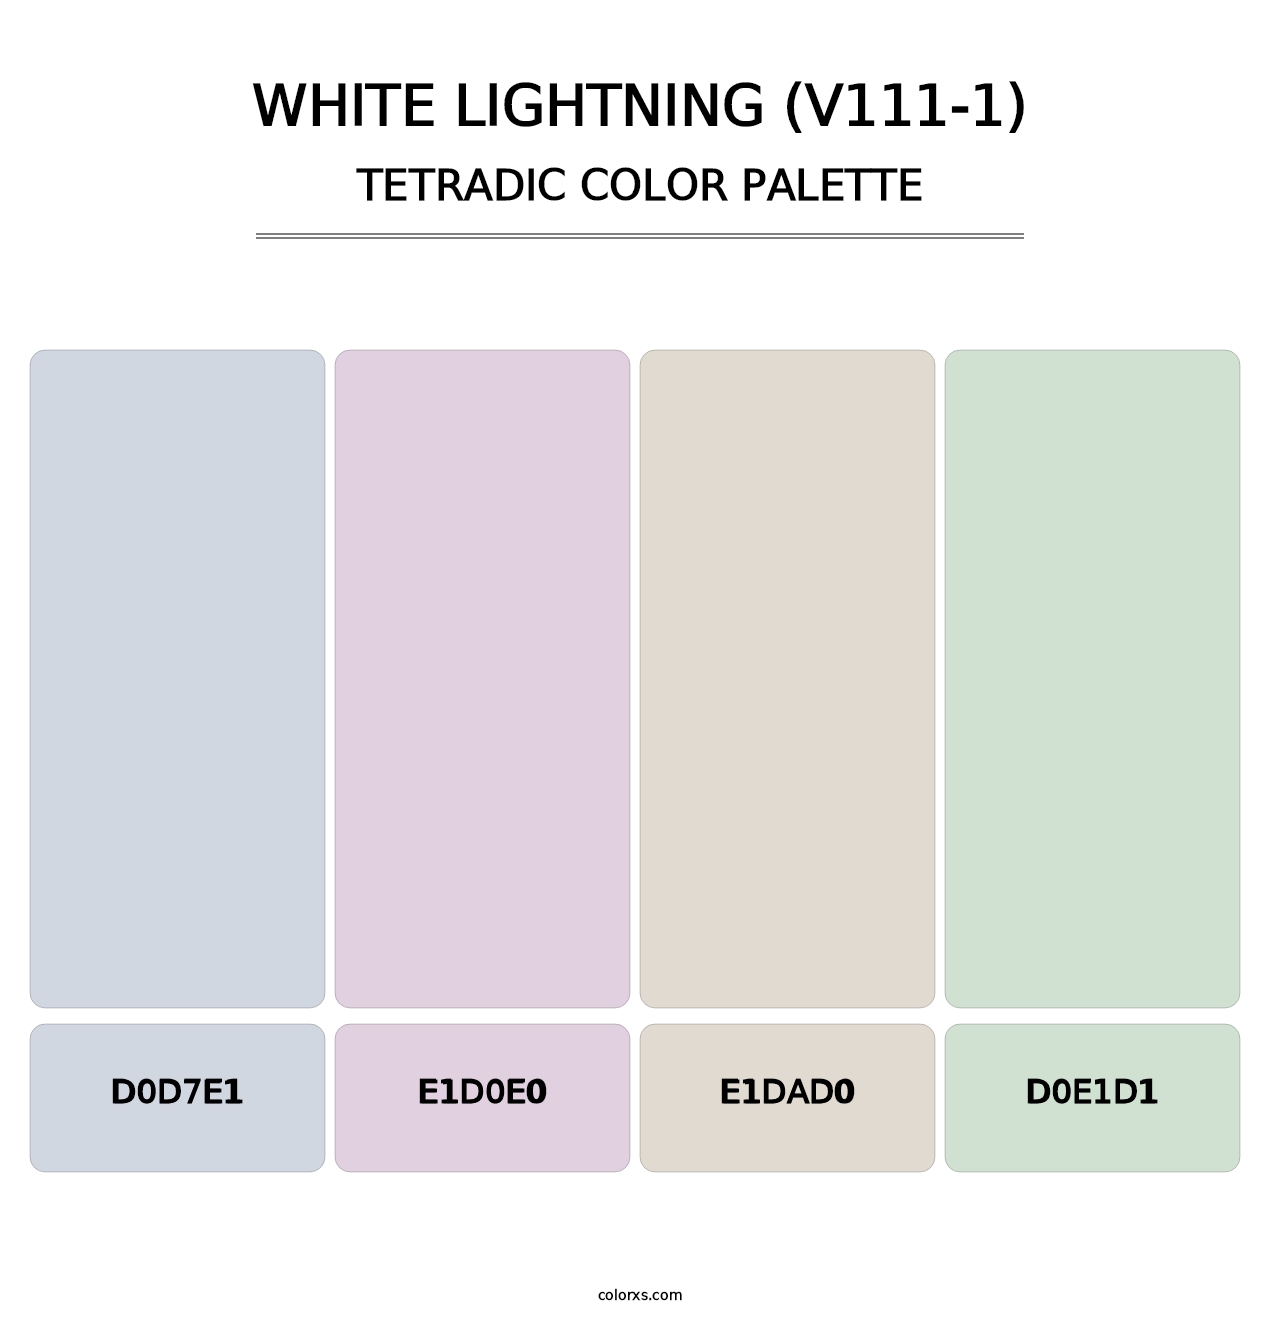 White Lightning (V111-1) - Tetradic Color Palette